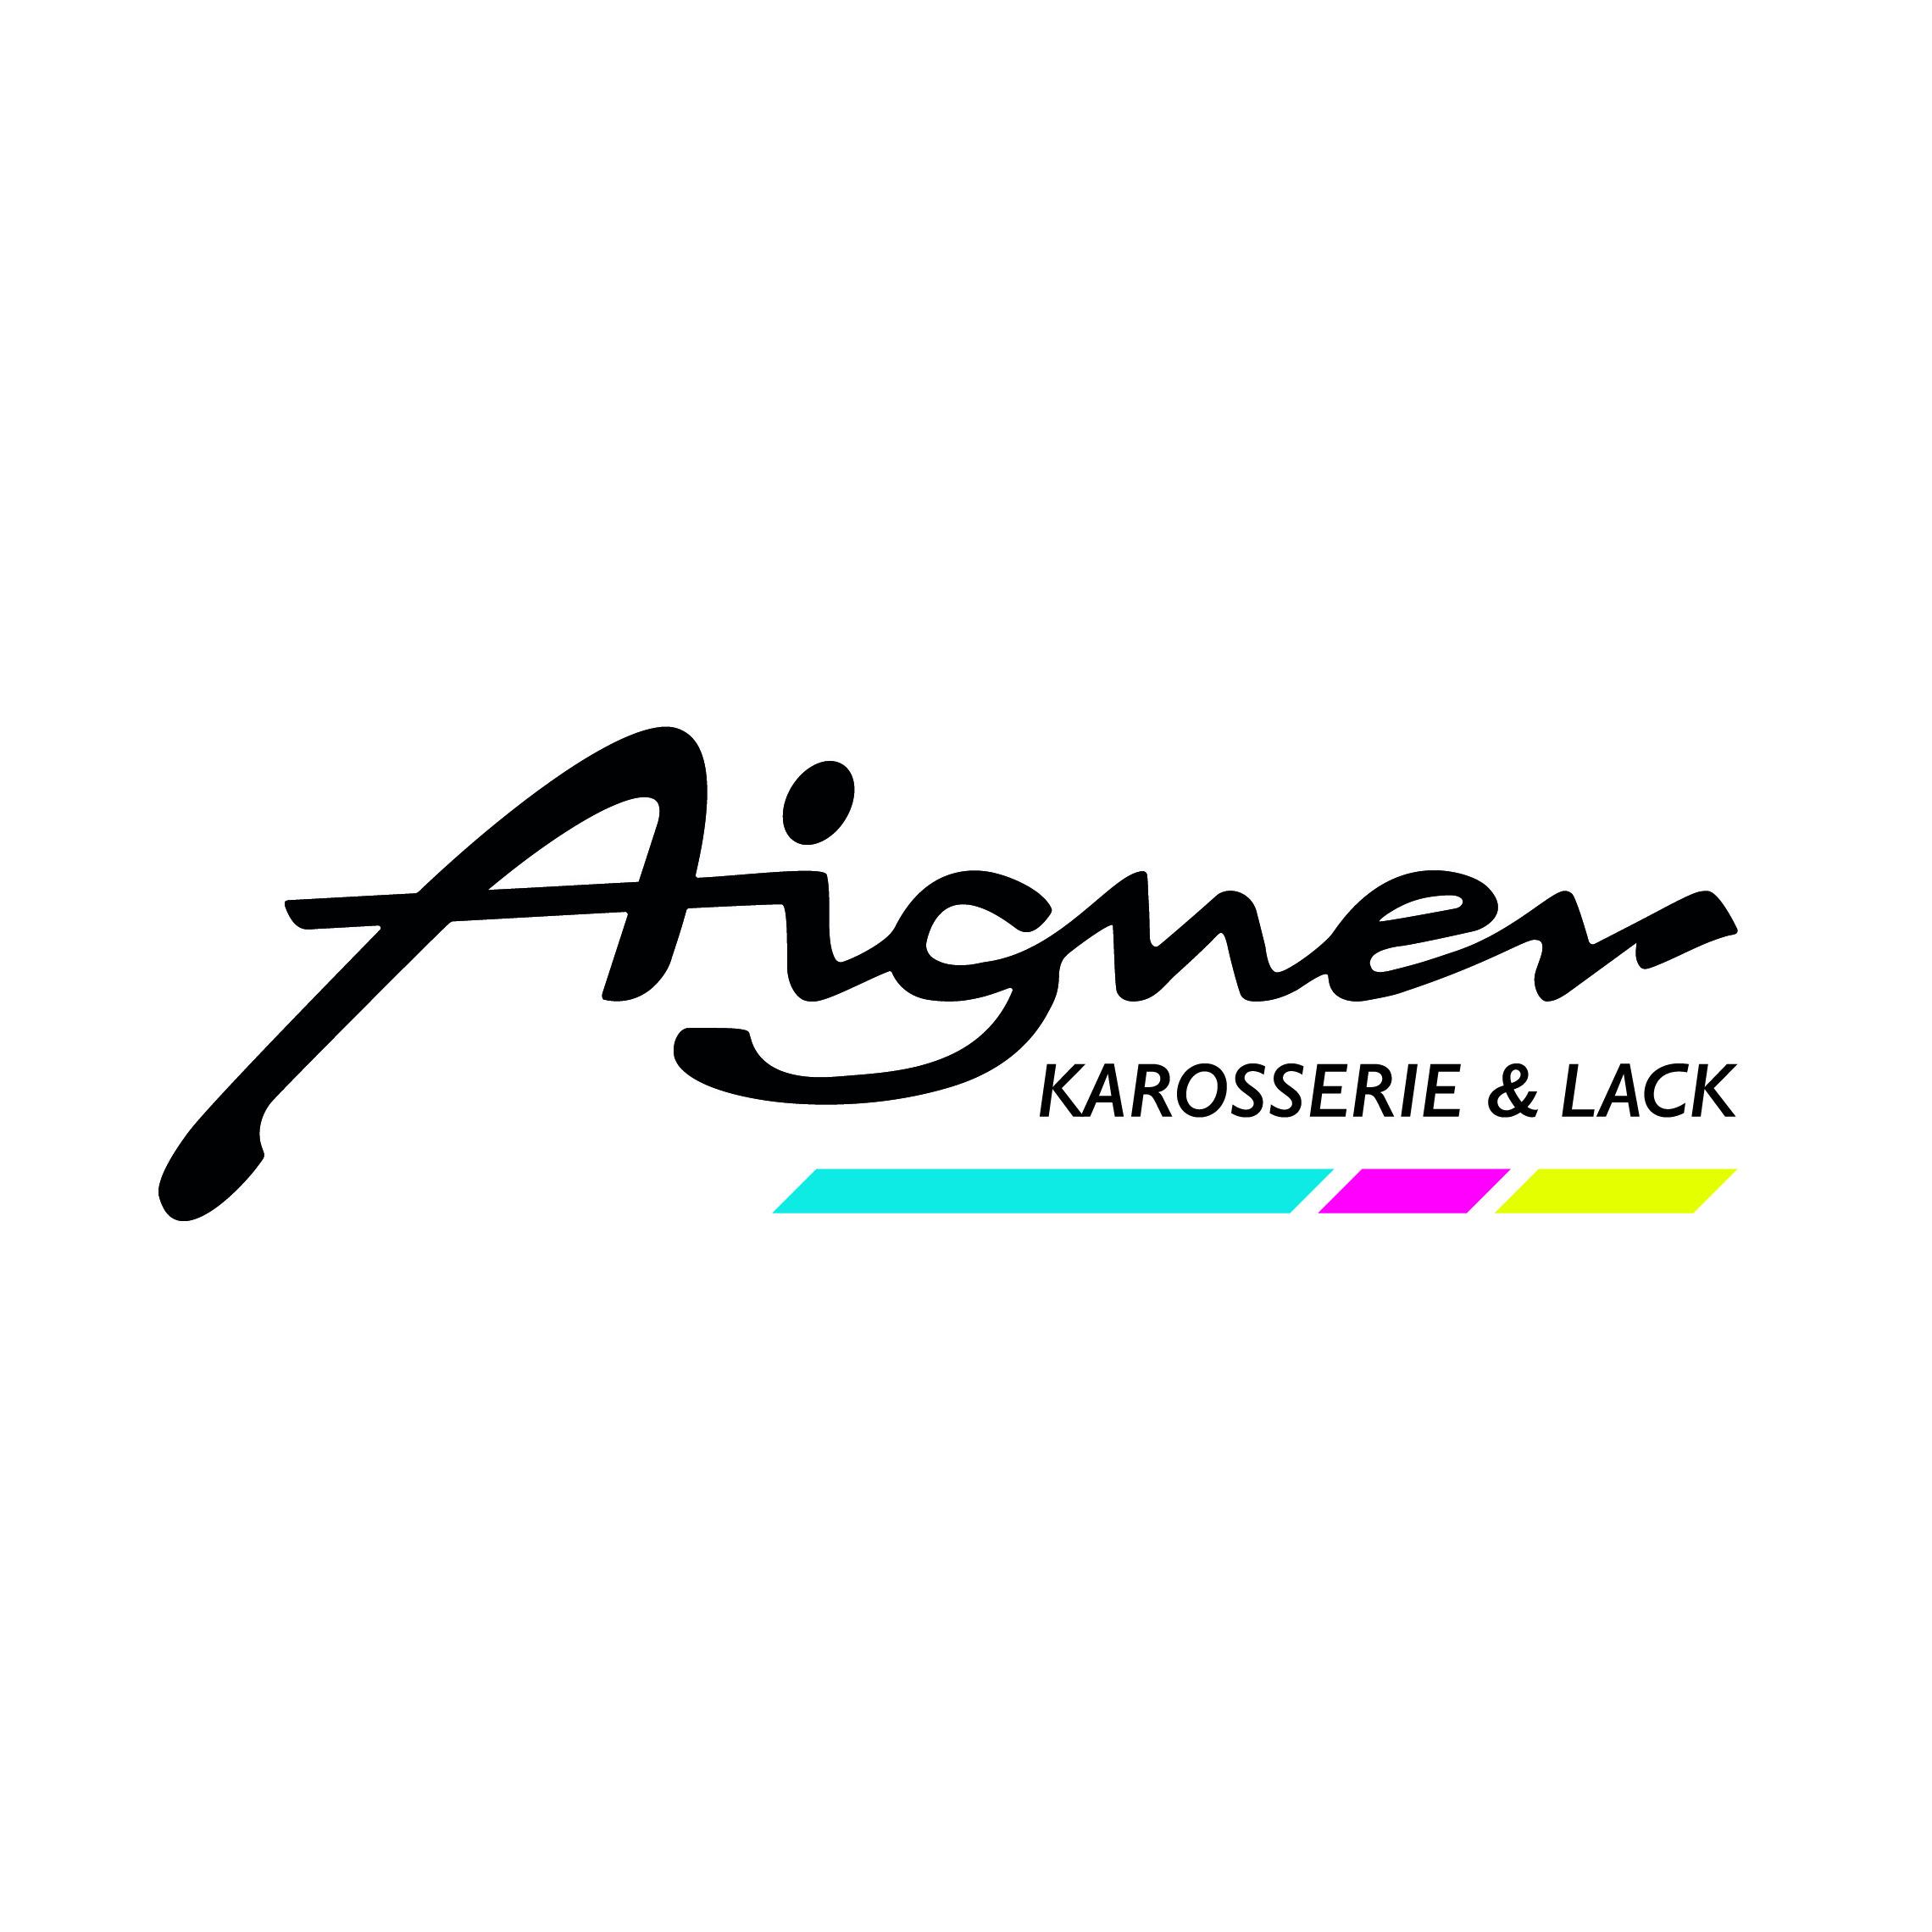 AIGNER - Karosserie & Lack GmbH in 6020 Innsbruck Logo